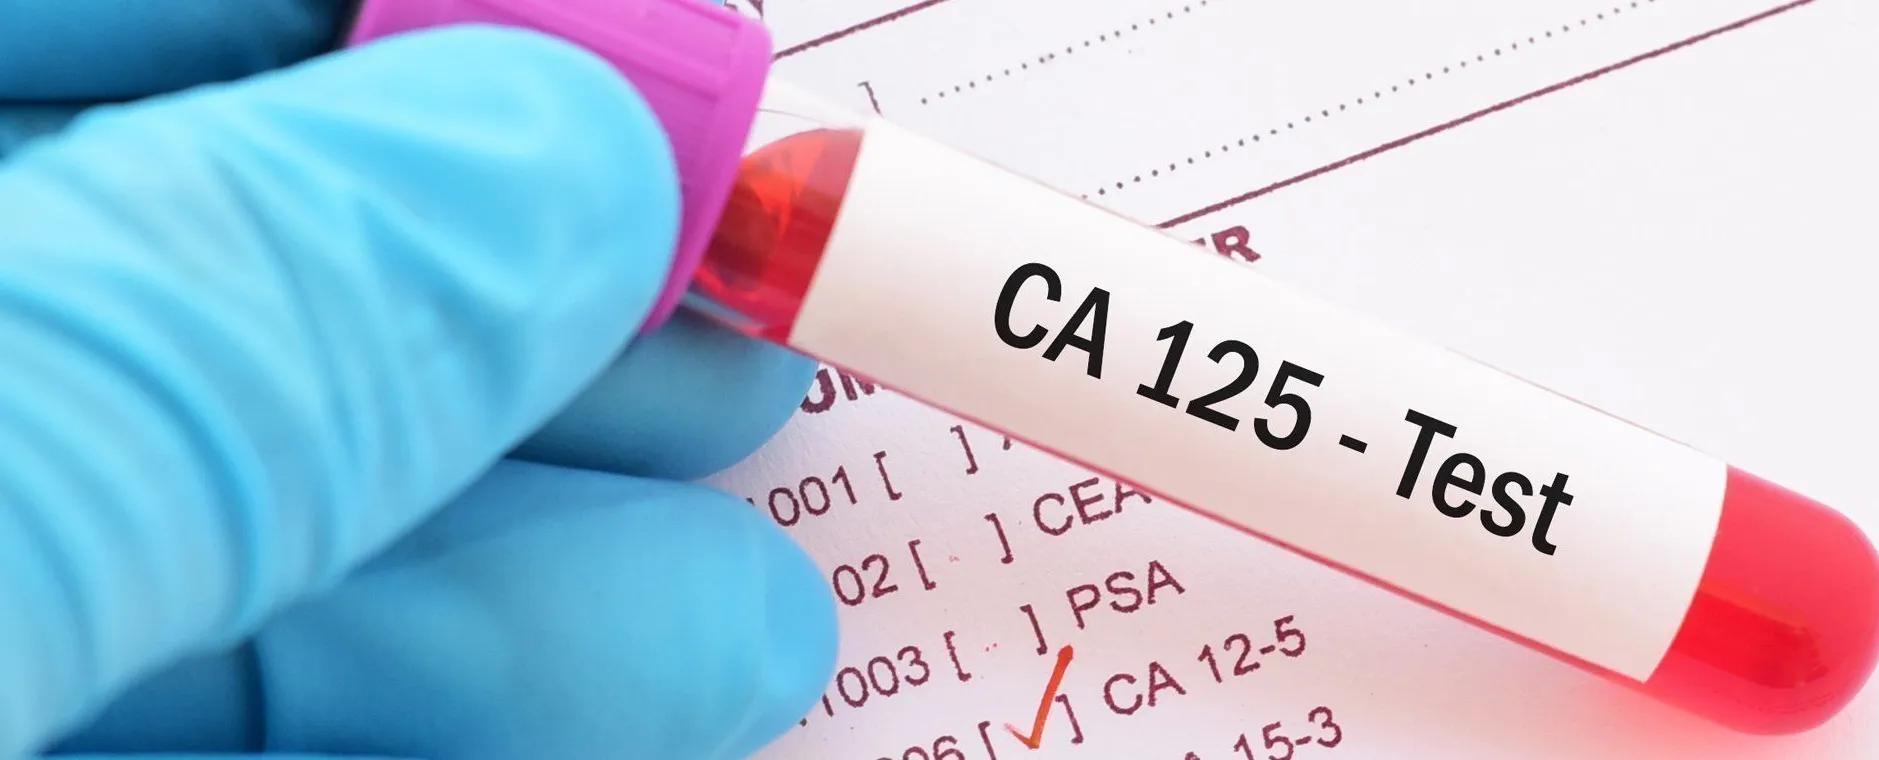 La protéine CA 125 comme outil de suivi